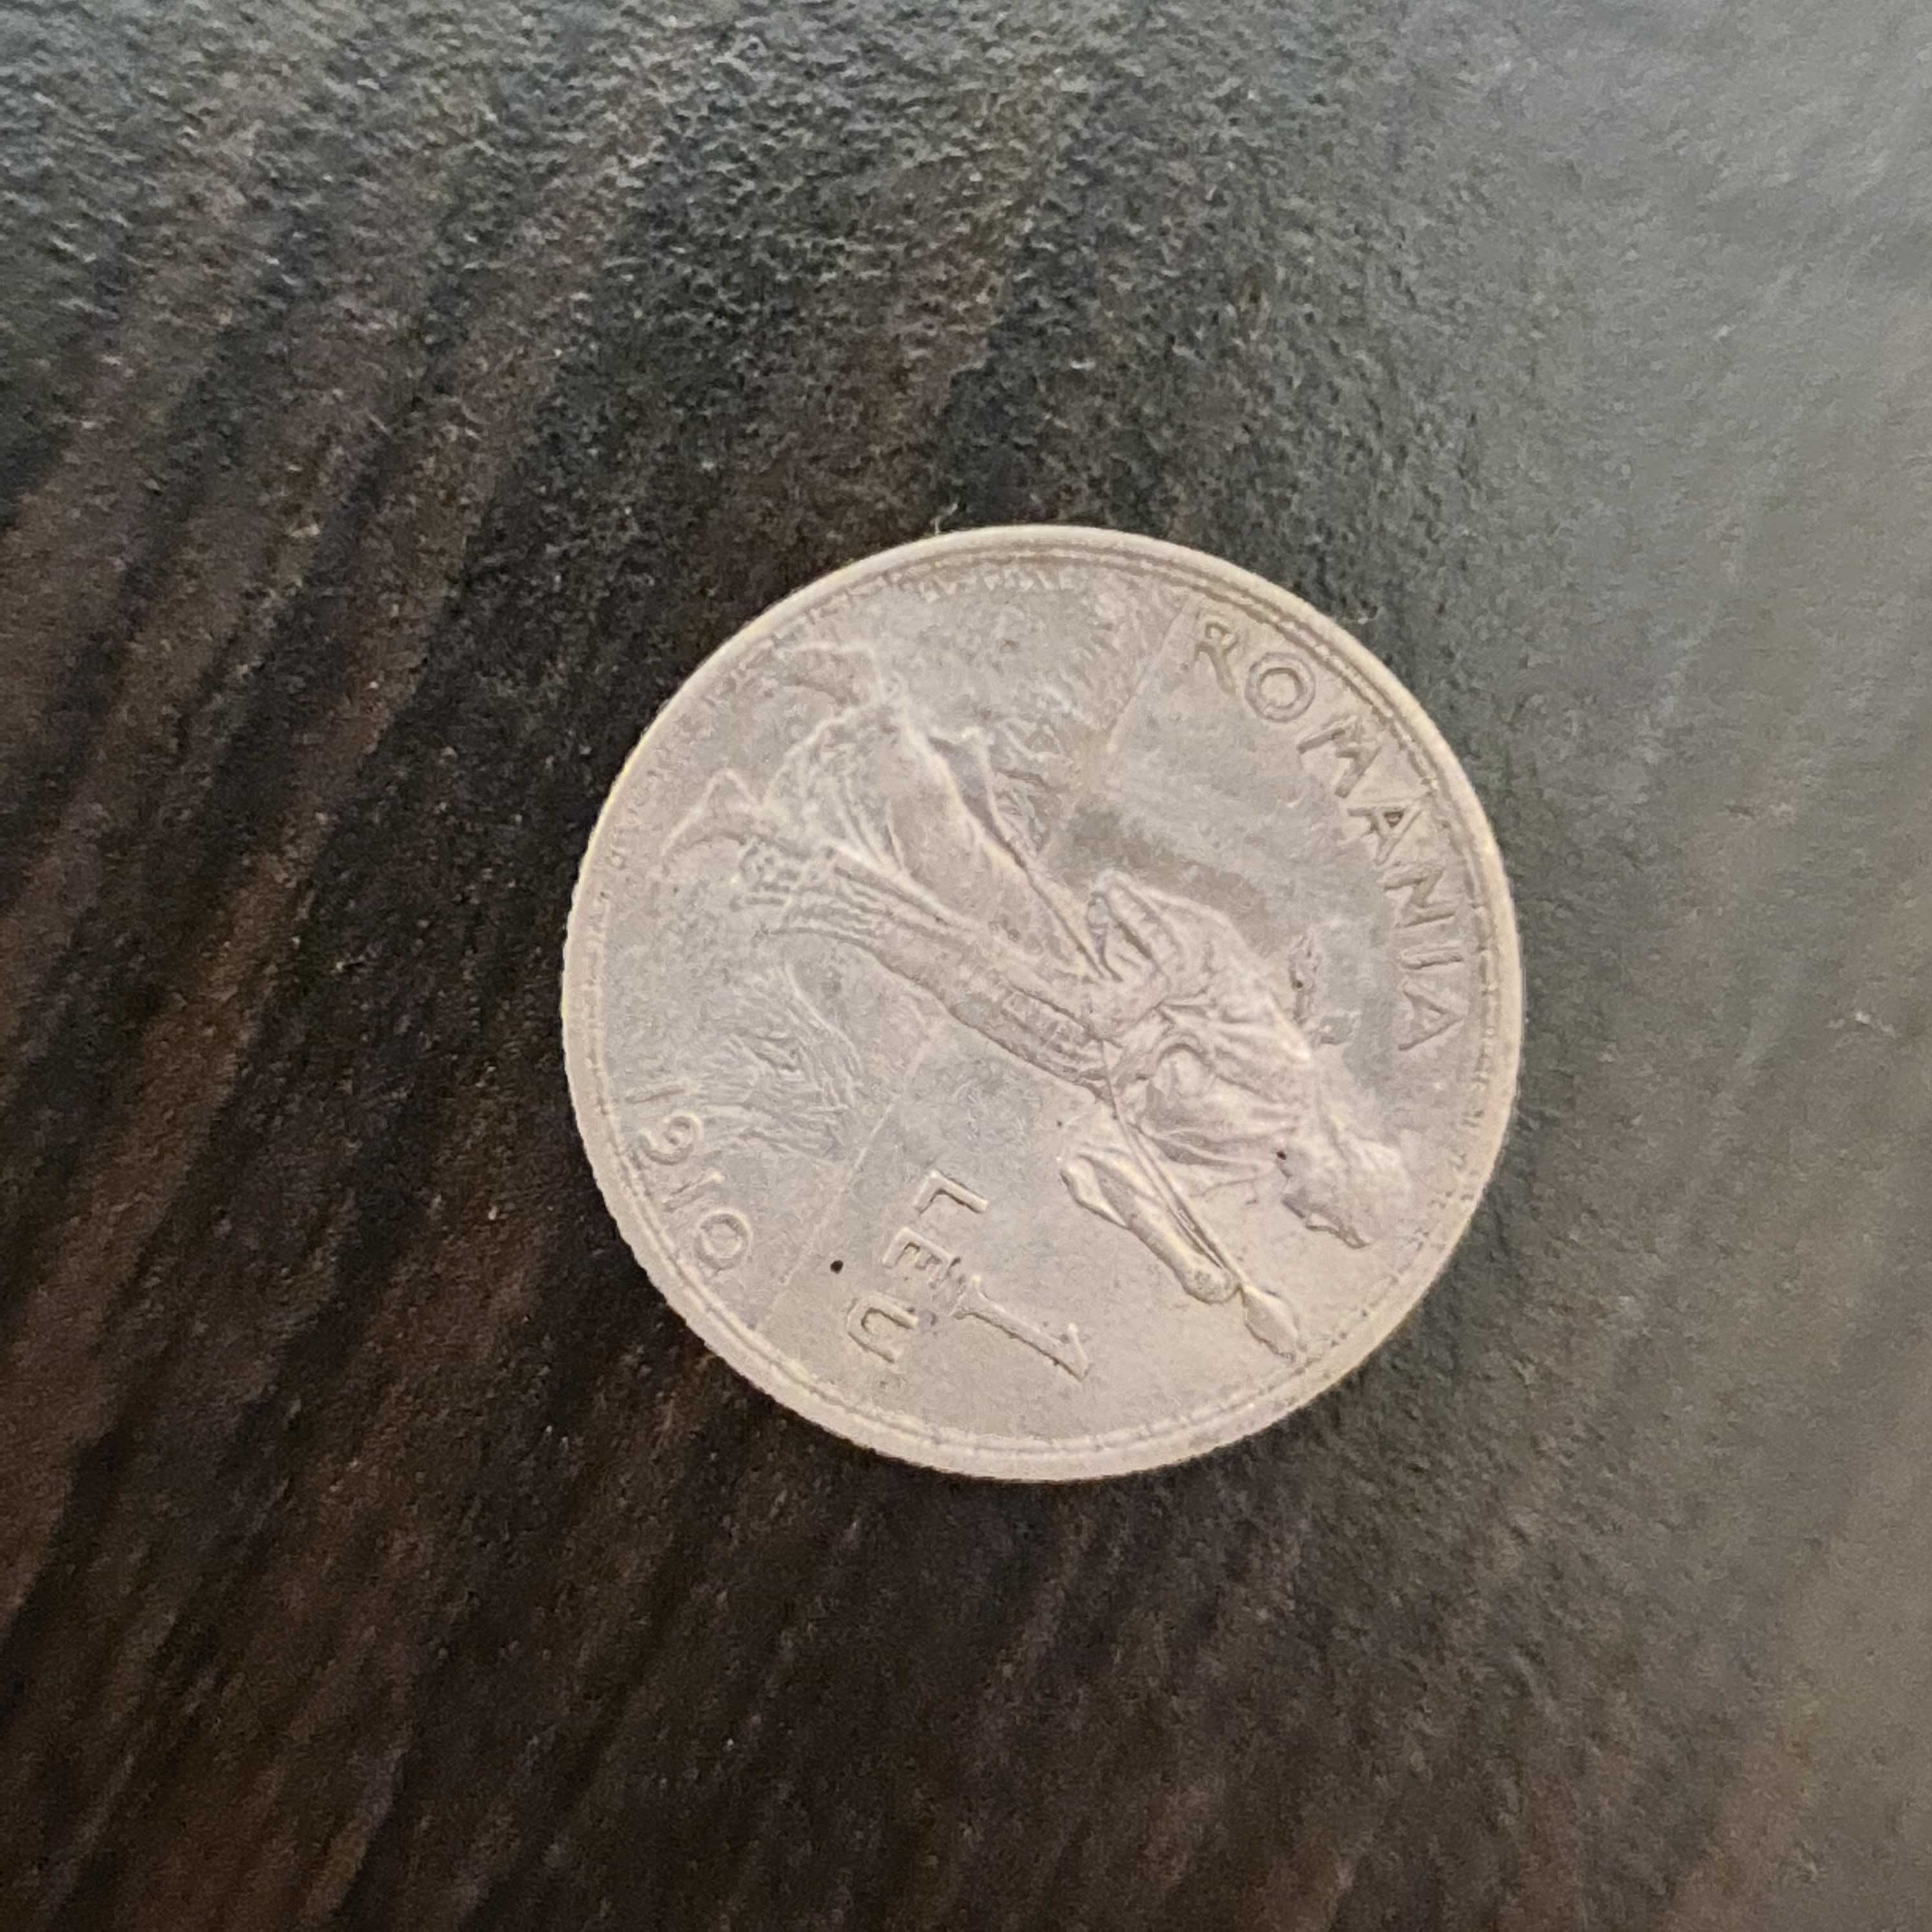 Monede vechi rare originale 2